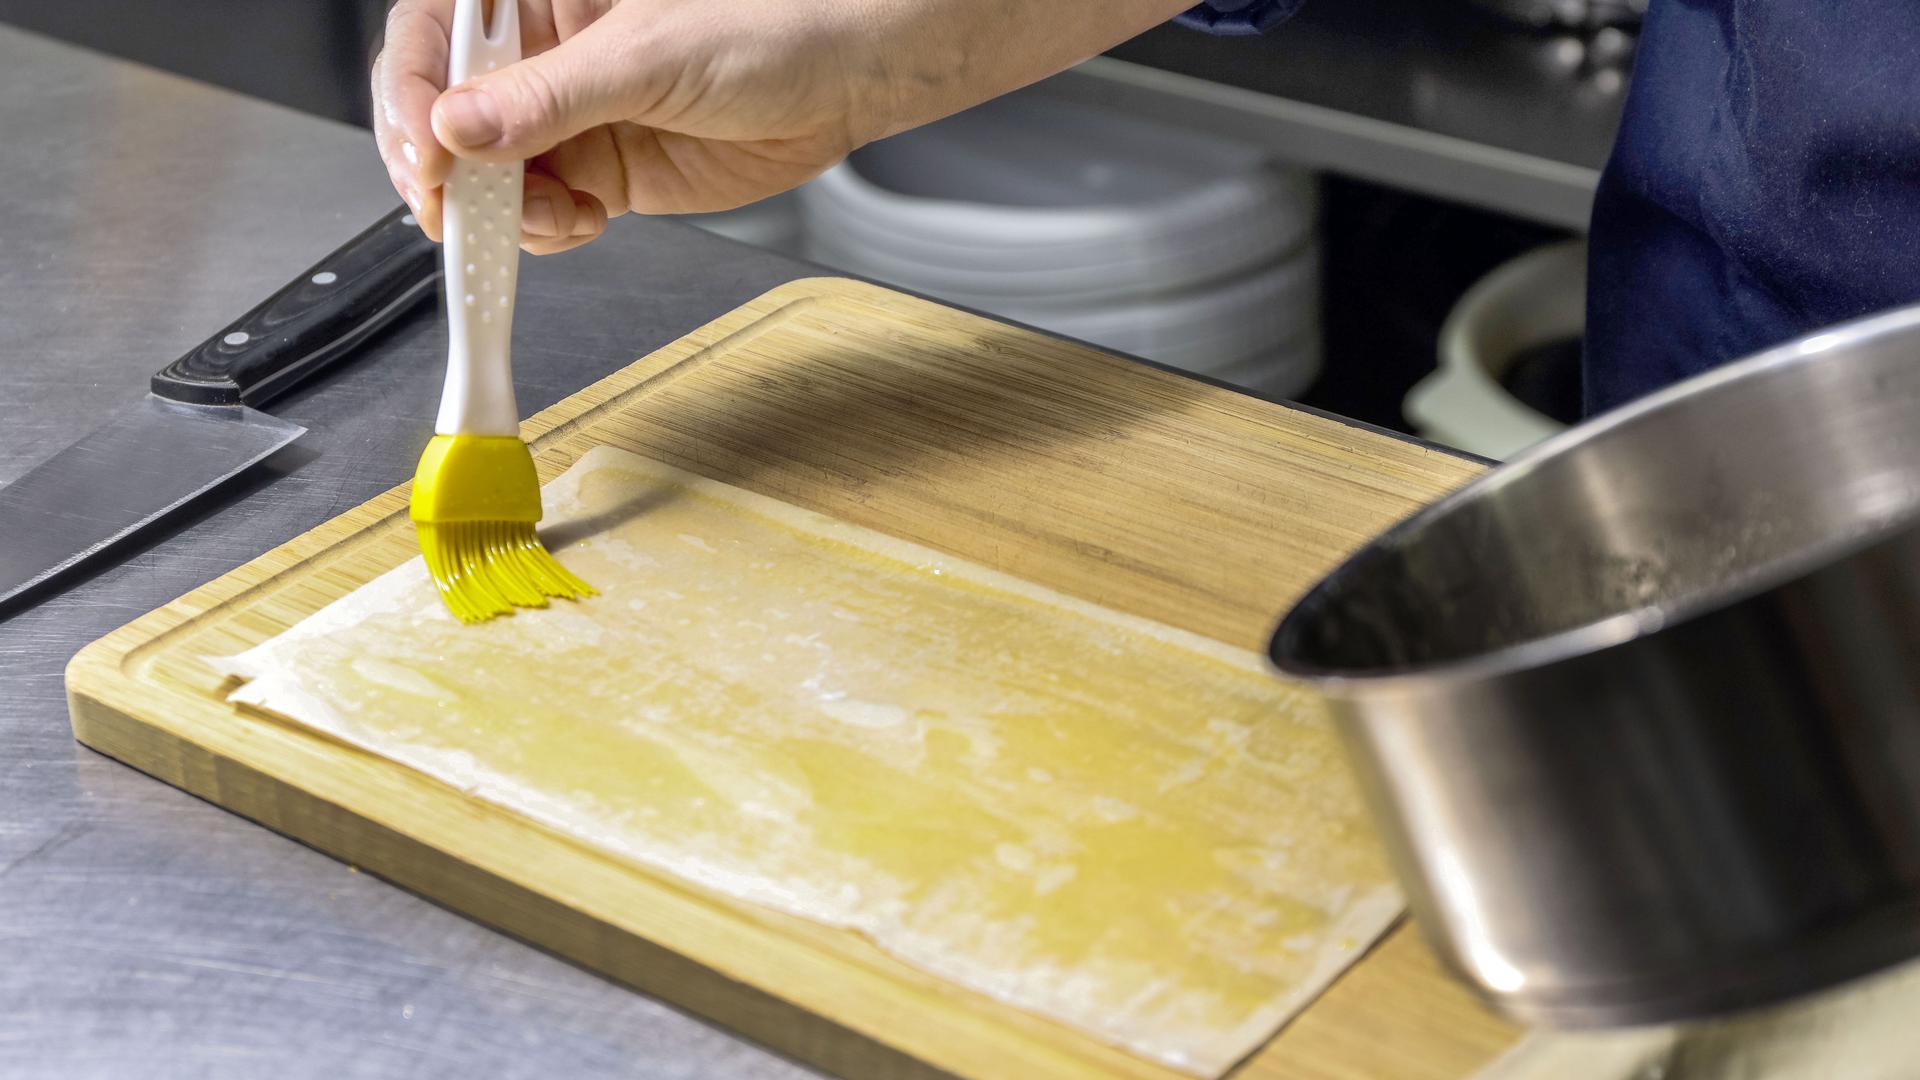 Ganze vier Platten des Filoteigs müssen dünn mit Butter bestrichen und übereinandergelegt werden. Die Platten werden anschließend in Quadrate geschnitten.